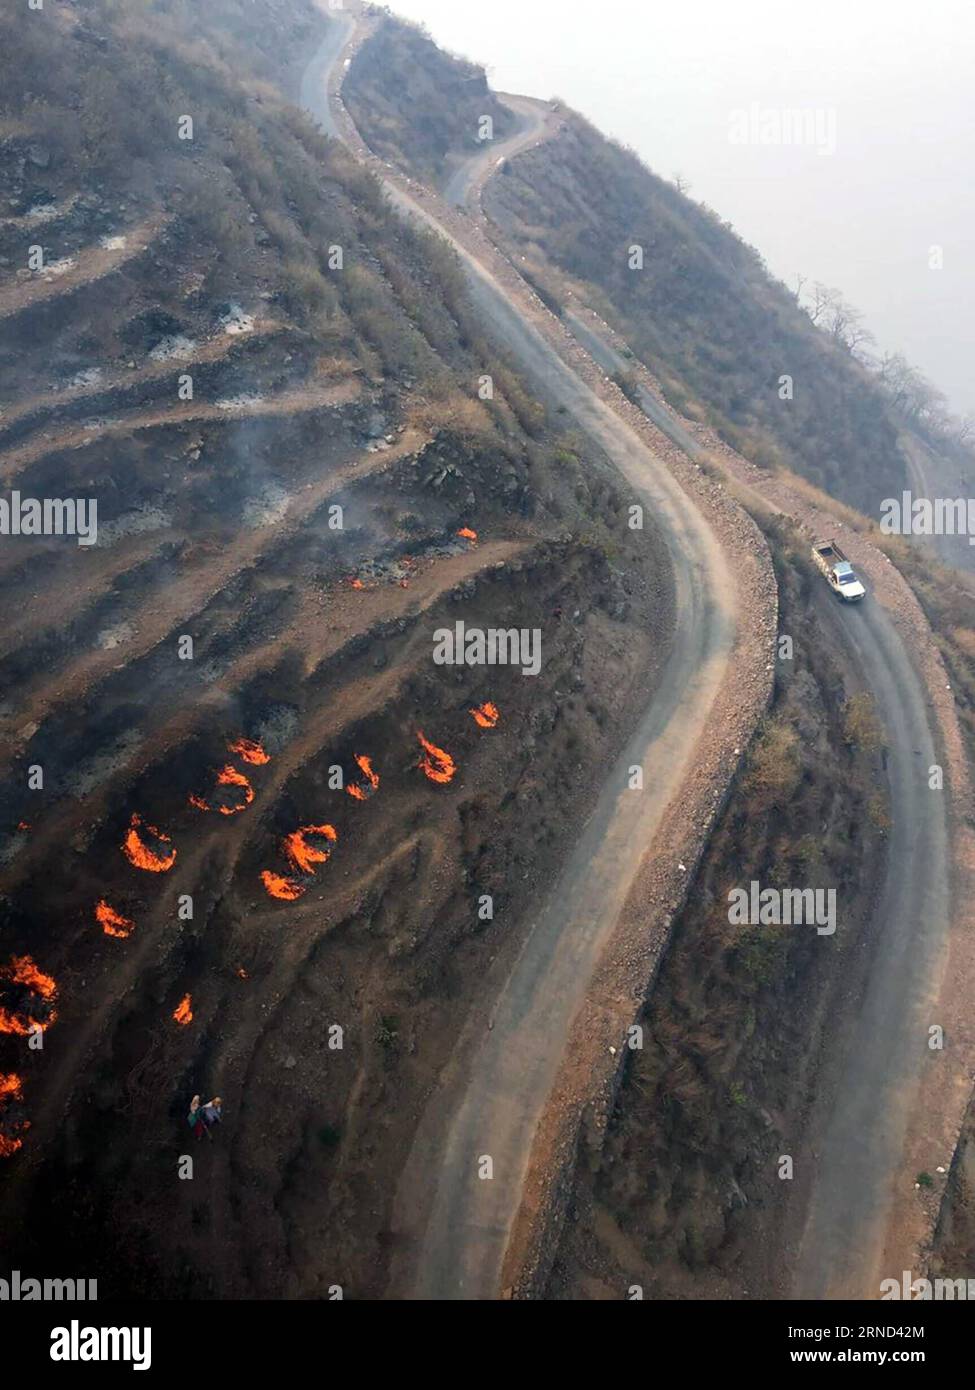 UTTARAKHAND, 1. Mai 2016 -- Foto aus einem Hubschrauber der indischen Luftwaffe am 1. Mai 2016 zeigt einige verbliebene Feuerpunkte in Uttarakhand, Indien. In den hügeligen Regionen des nördlichen indischen Bundesstaates Uttarakhand wütet ein massiver Waldbrand, der riesige Waldgebiete beschädigt hat, sagten Beamte am Sonntag. Indisches Verteidigungsministerium) INDIEN-UTTARAKHAND-WALDBRAND Xinhua/IndianxMinistryxofxD... PUBLICATIONxNOTxINxCHN Uttarakhand 1. Mai 2016 Foto von einem Hubschrauber der indischen Luftwaffe AM 1. Mai 2016 zeigt einige verbliebene Feuerpunkte in Uttarakhand Indien ein massives Waldfeuer dringt in Th Stockfoto